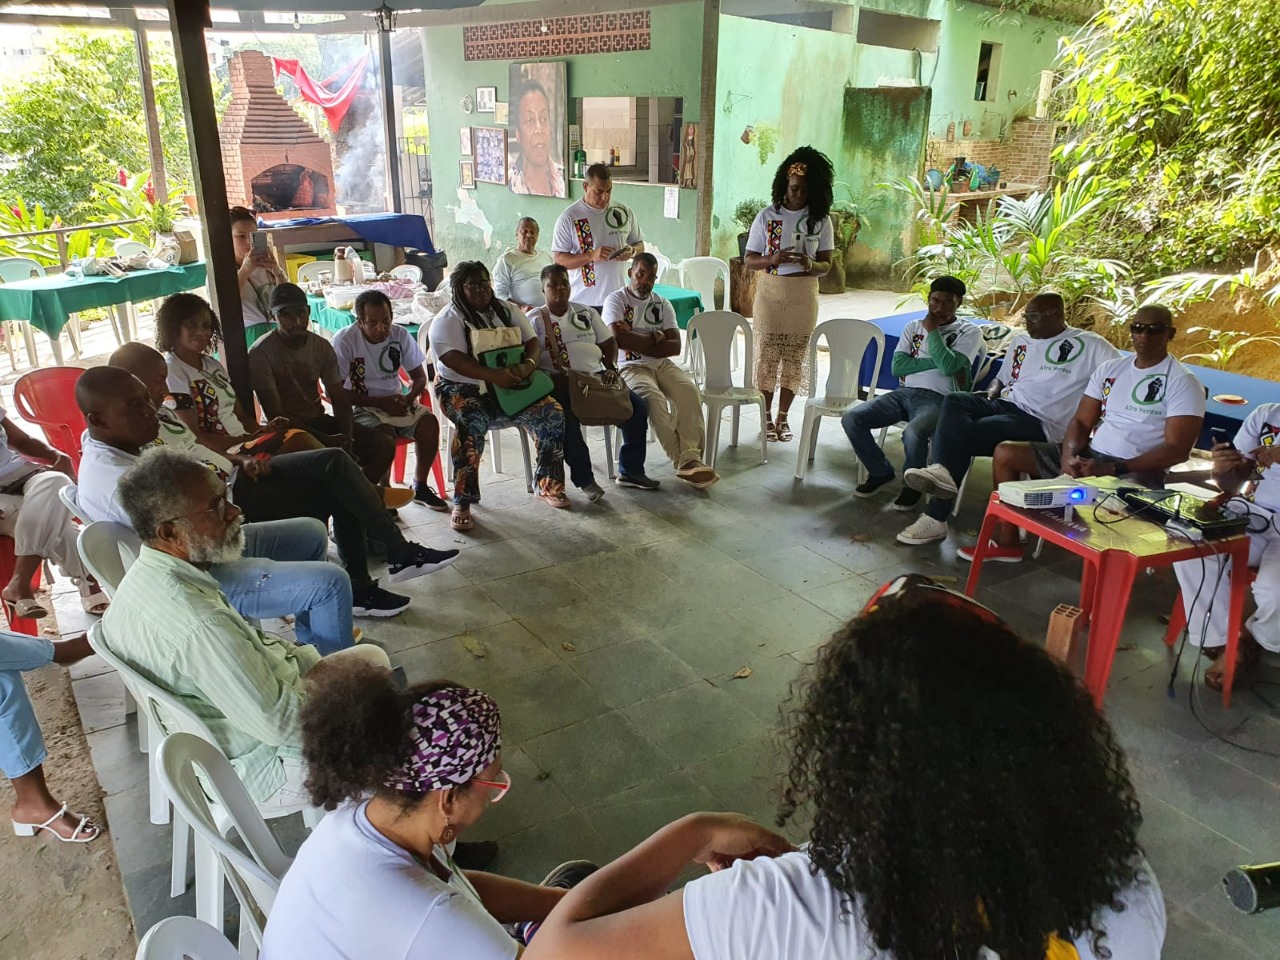 Quilombo Sacopã recebe evento gratuito em celebração ao Dia da Consciência Negra